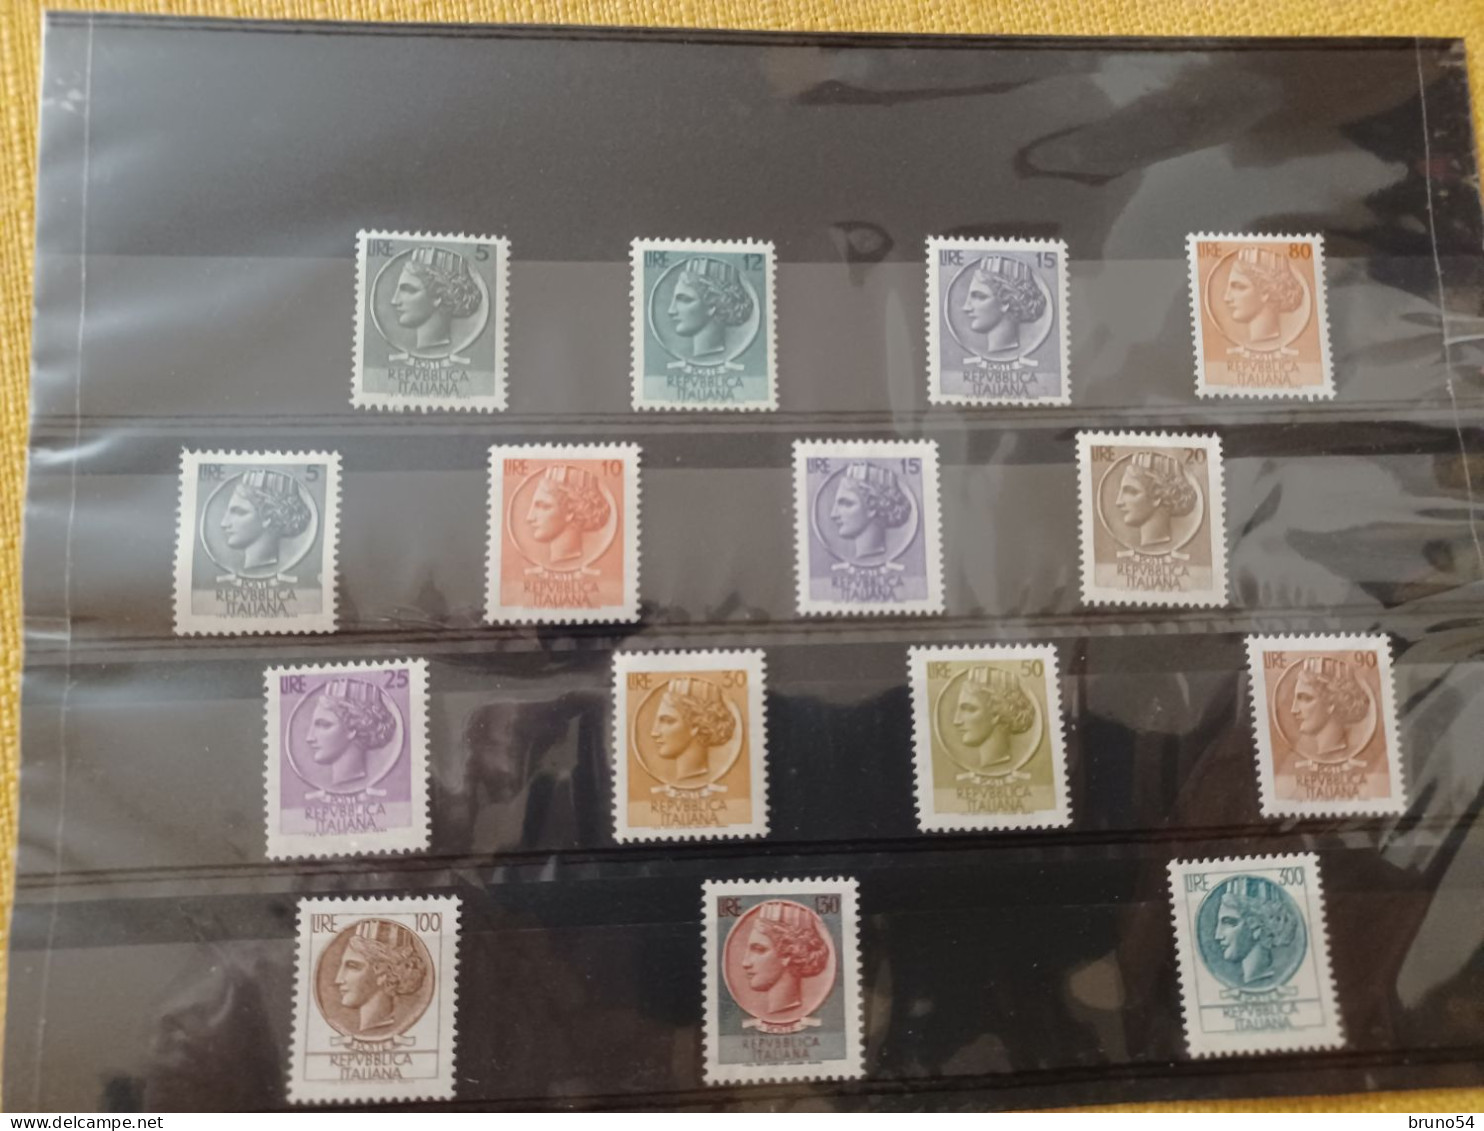 collezione di circa 750 francobolli italiani